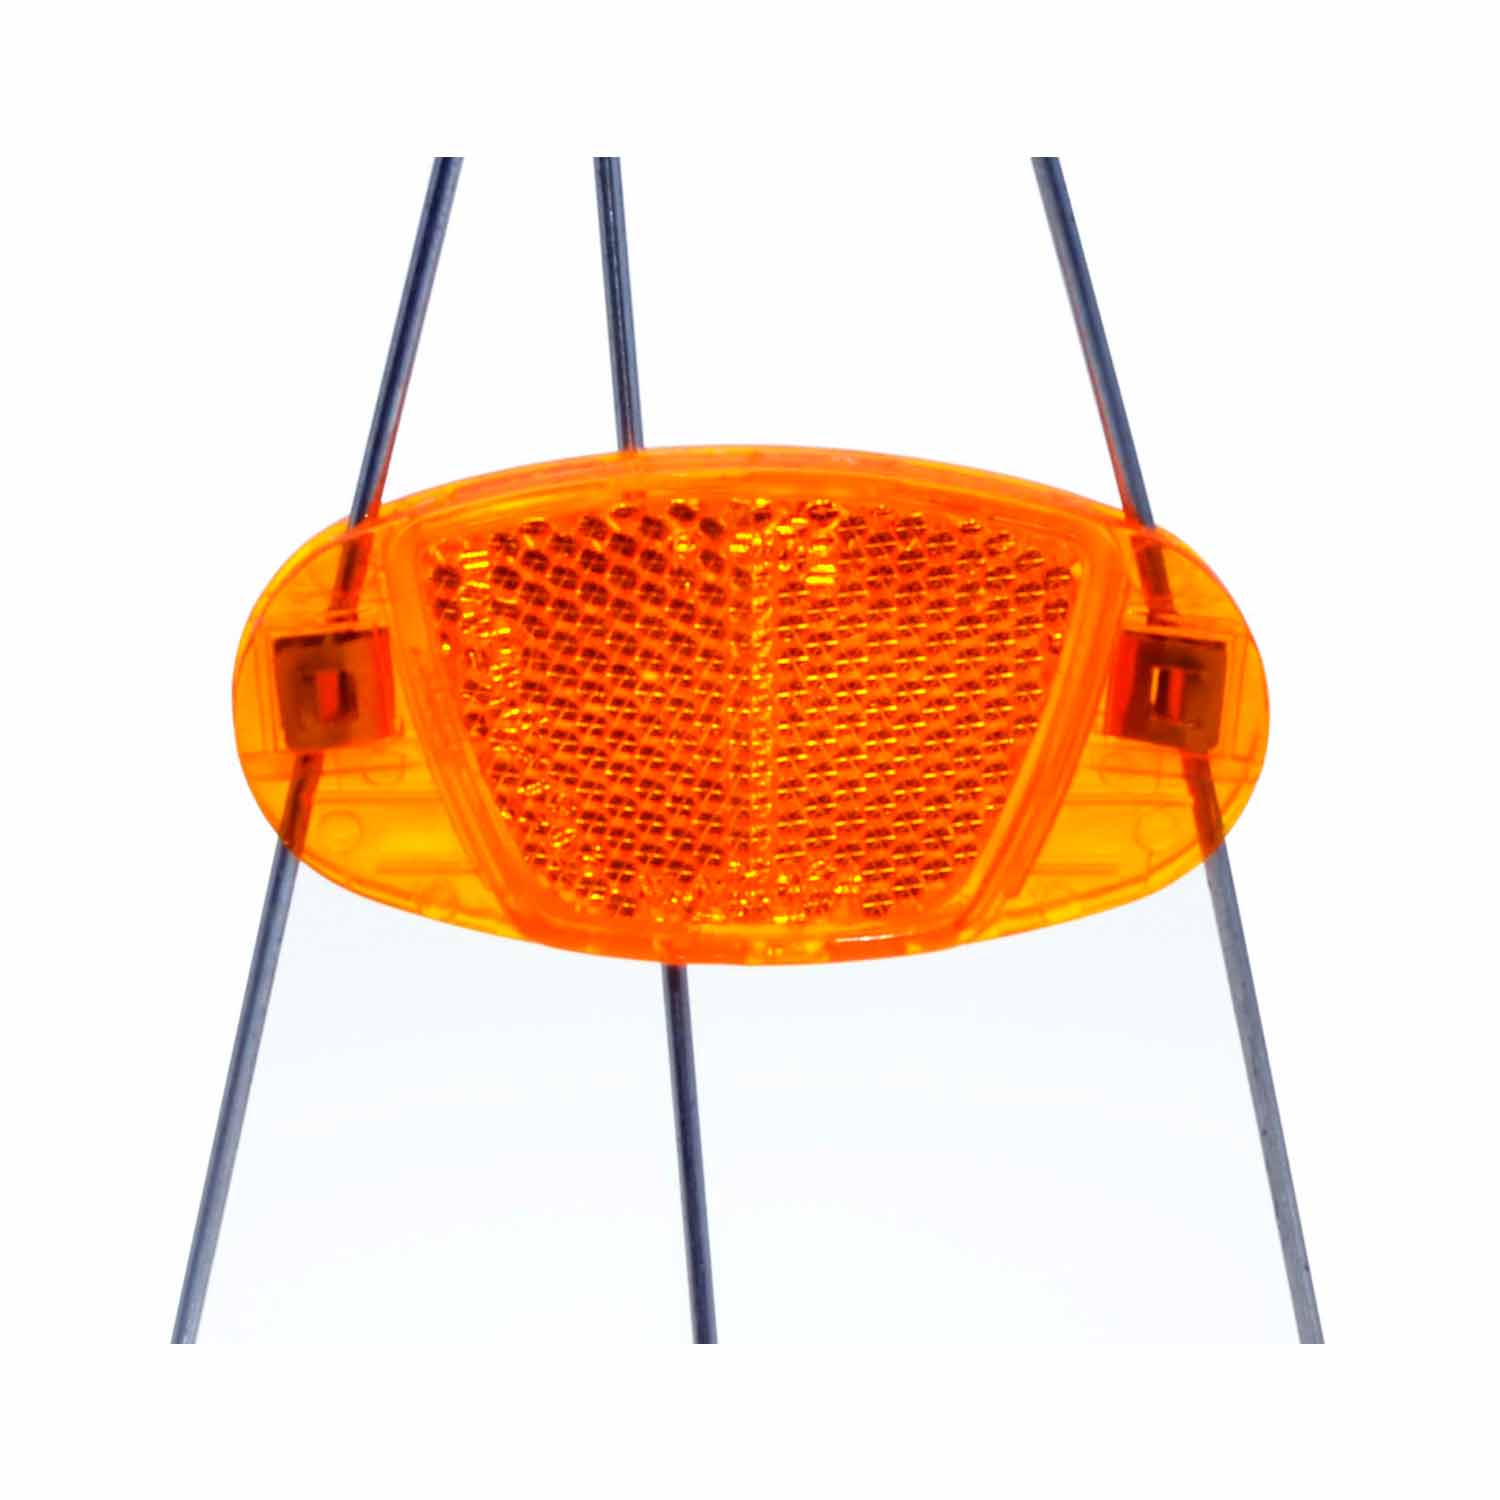 Fahrrad-Speichenreflektor orange 2 Stück